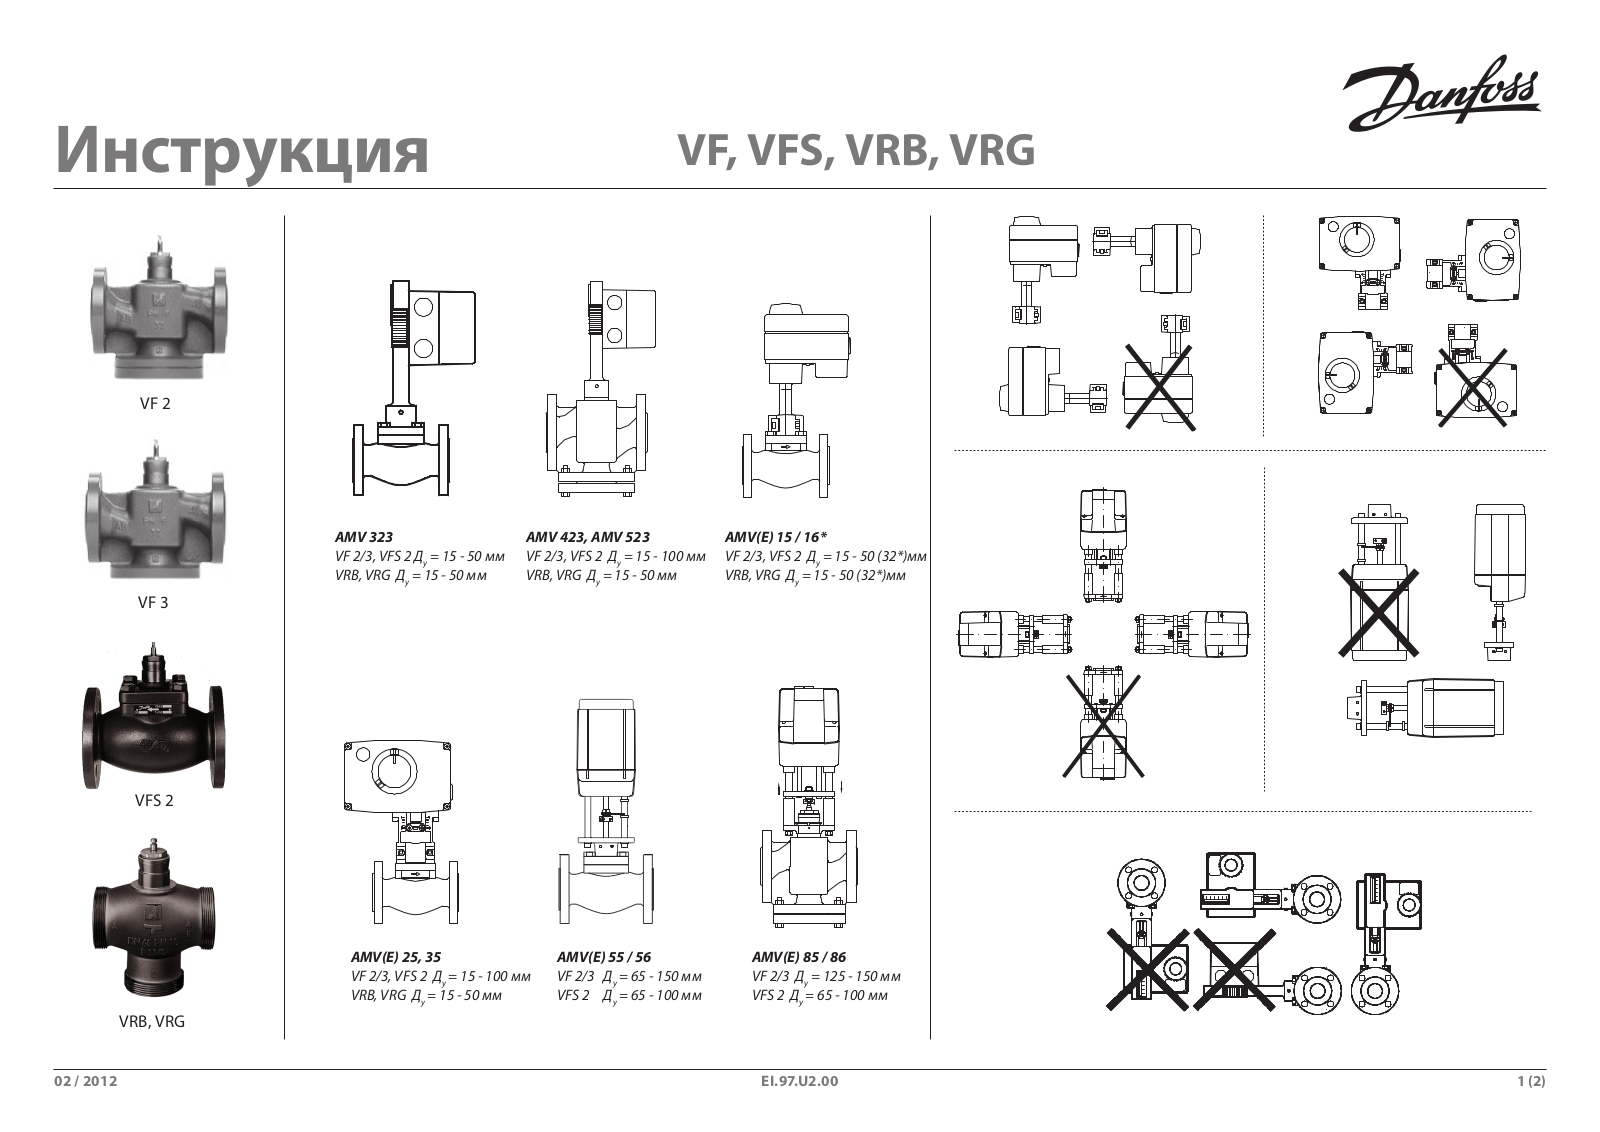 Danfoss VF, VFS, VRB, VRG Operating guide